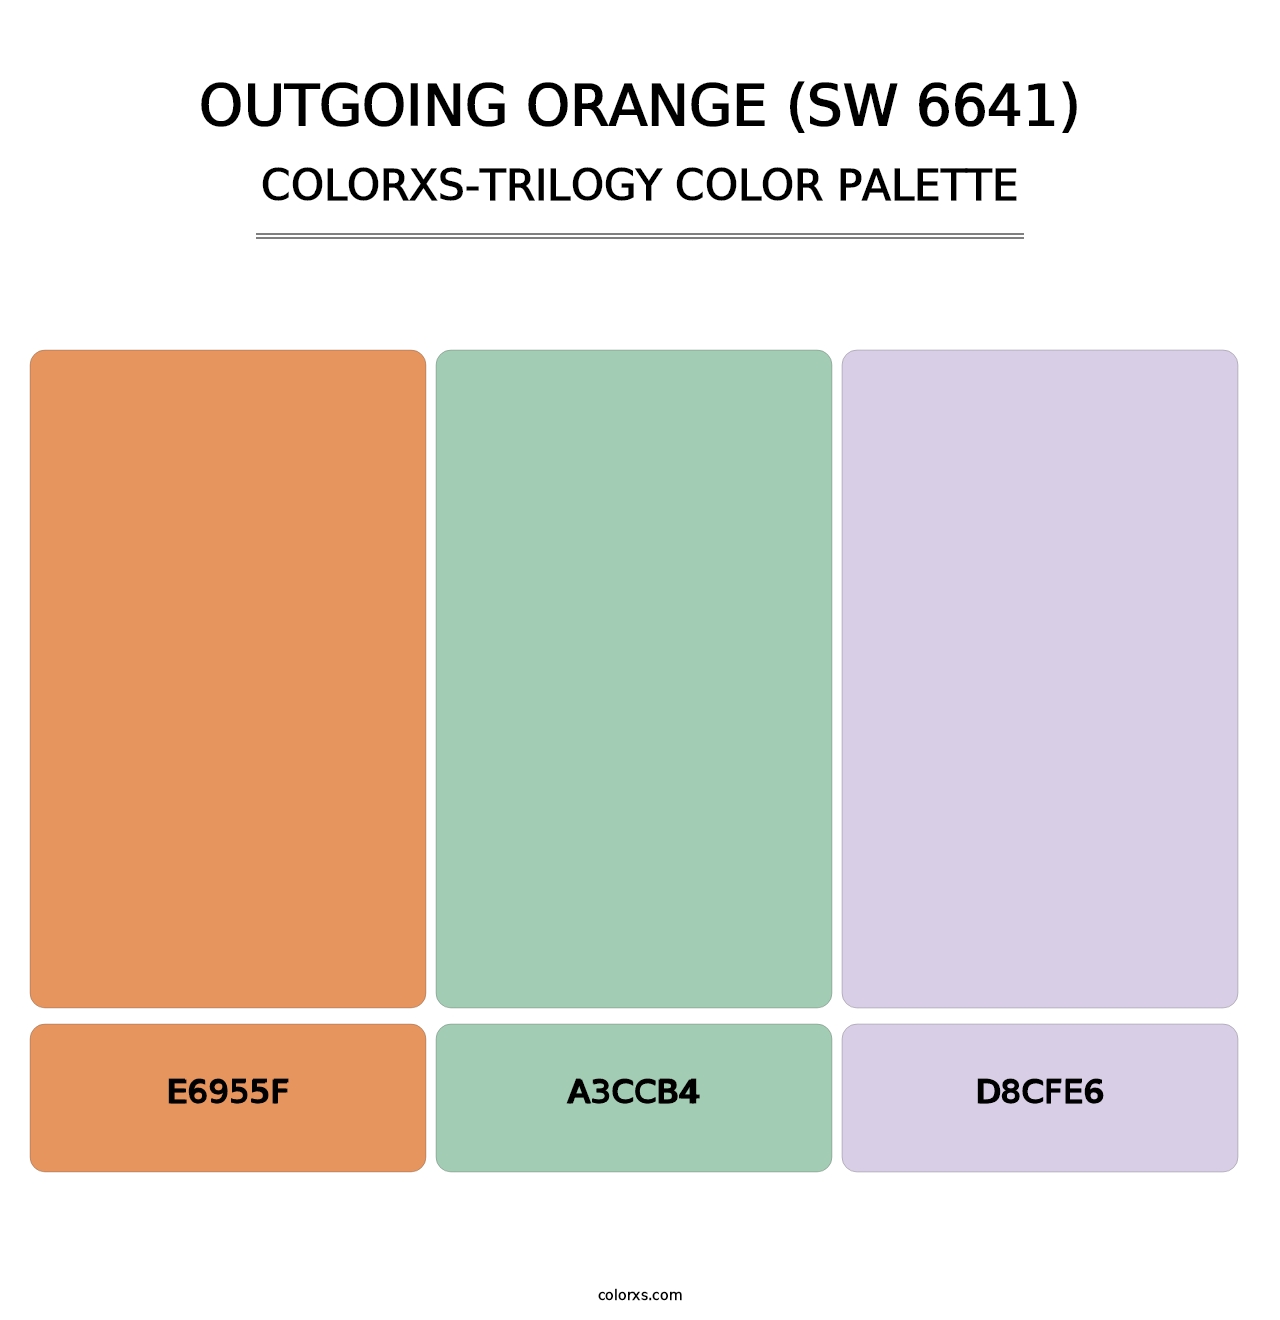 Outgoing Orange (SW 6641) - Colorxs Trilogy Palette